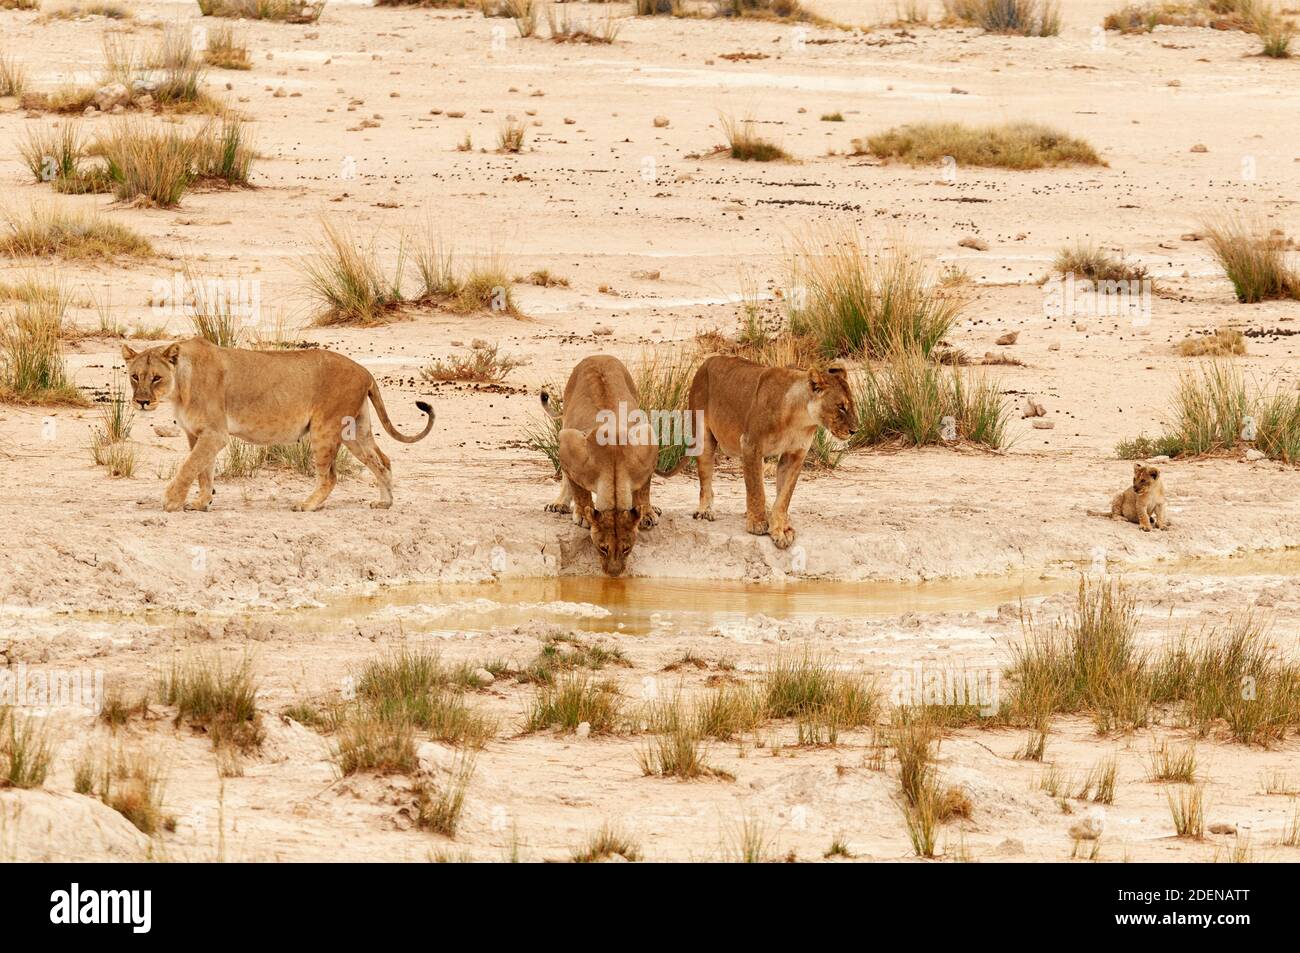 Afrika, Namibia, Región de Kunene, Parque Nacional Etosha, orgullo de león en el pozo Foto de stock